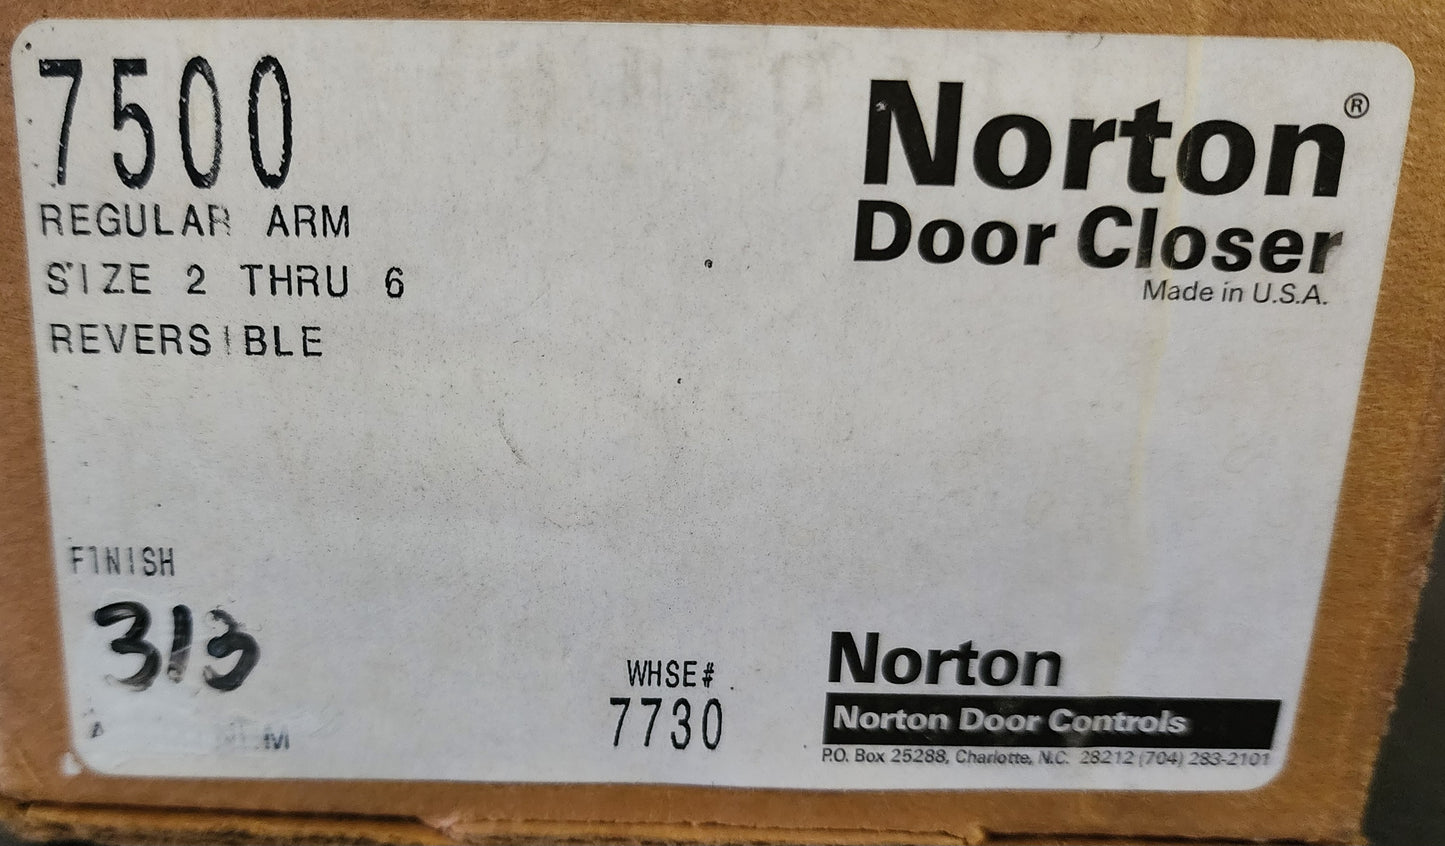 Norton 7500 Door Closer Series | Heavy Duty Hydraulic | Interior & Exterior | Non-Handed |